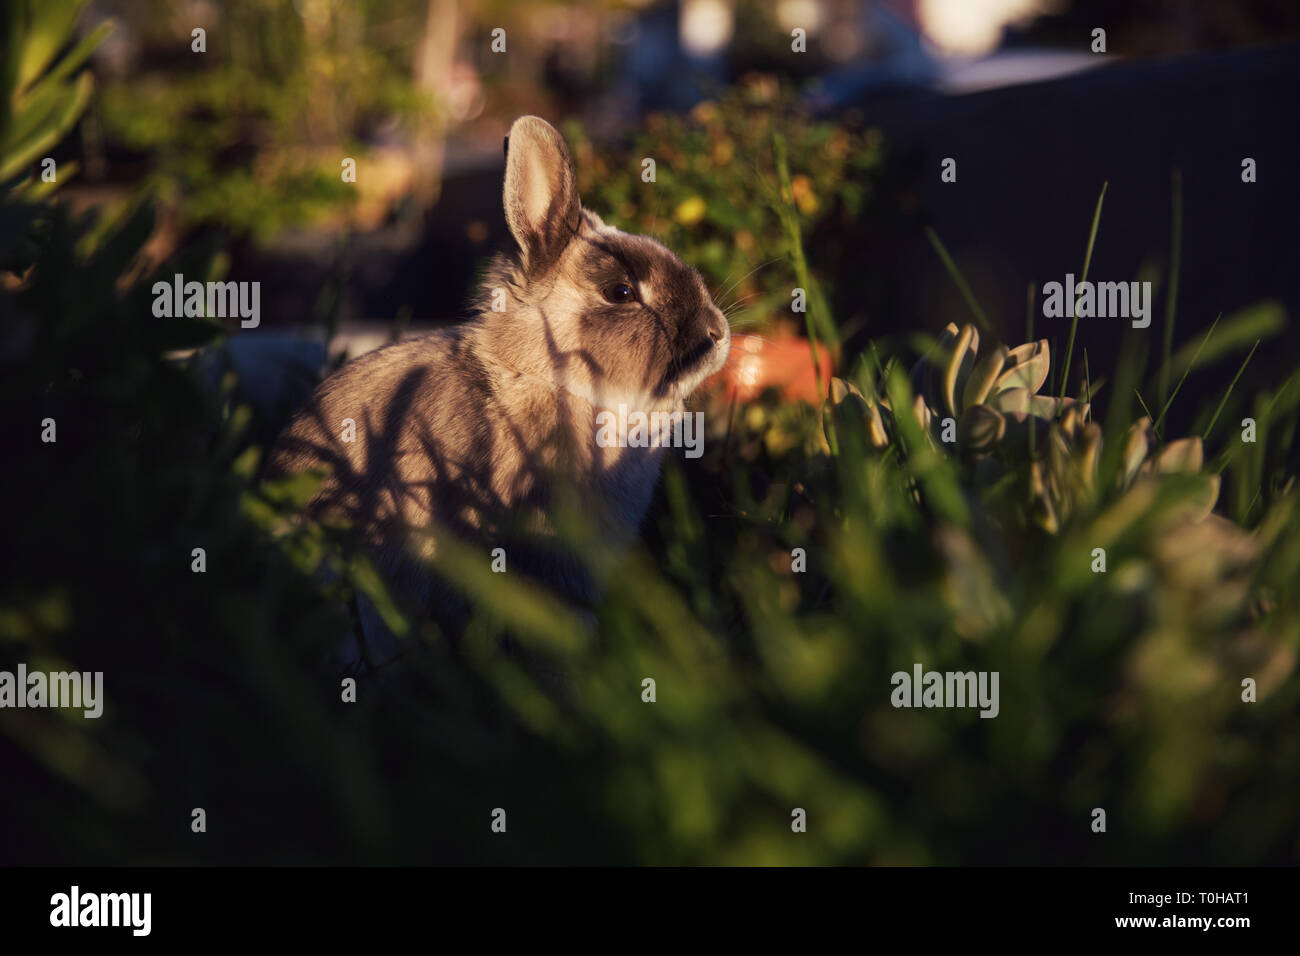 Un moody portait de un conejo enano disfrutando del sol de la tarde en un jardín de hierba. Foto de stock